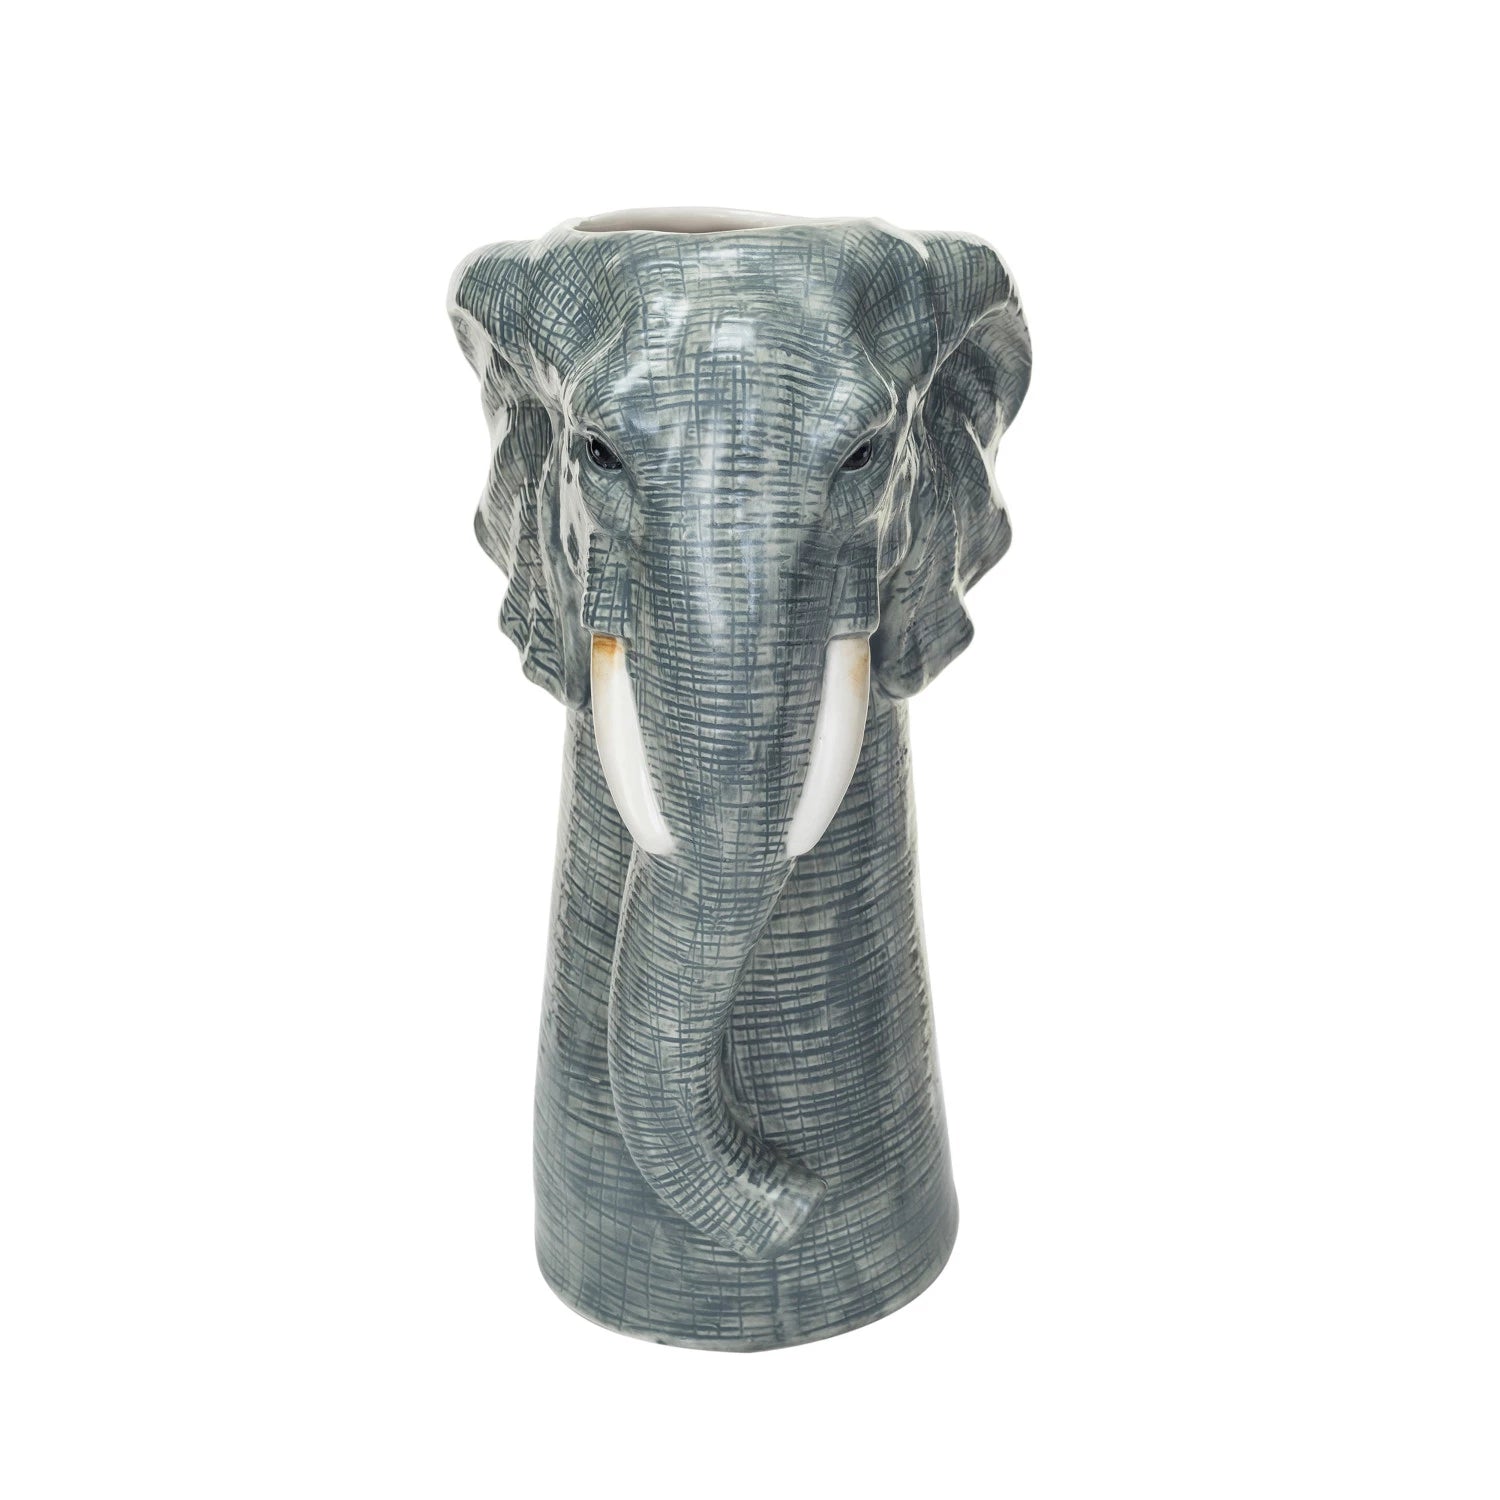 Hand Painted Stoneware Animal Vase, Style Options